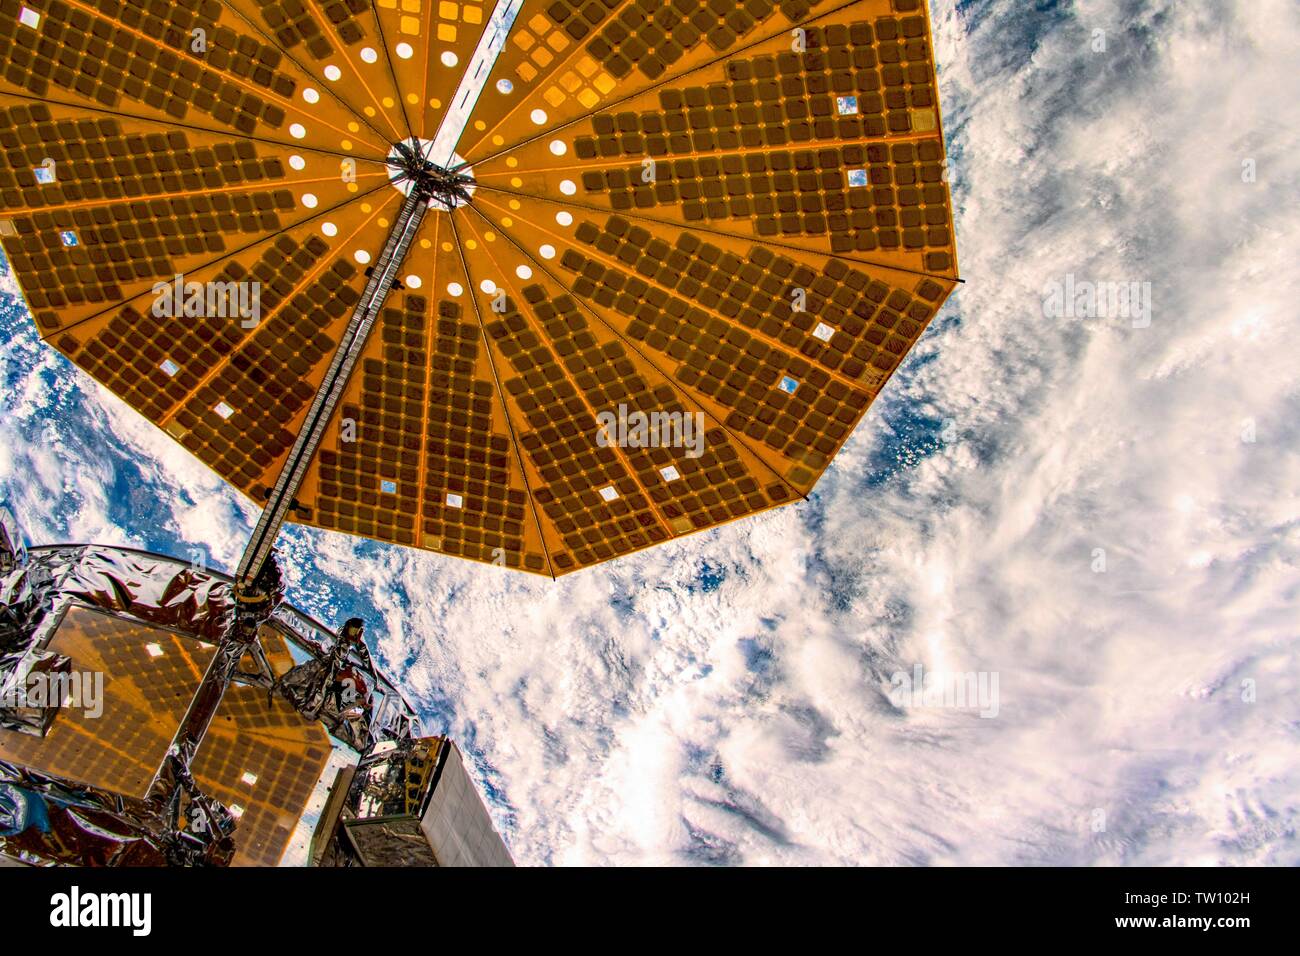 Le vaisseau spatial nuages ci-dessous. La beauté dans la nature de notre planète Terre vue de la Station spatiale internationale (ISS). L'image est un domaine public han Banque D'Images